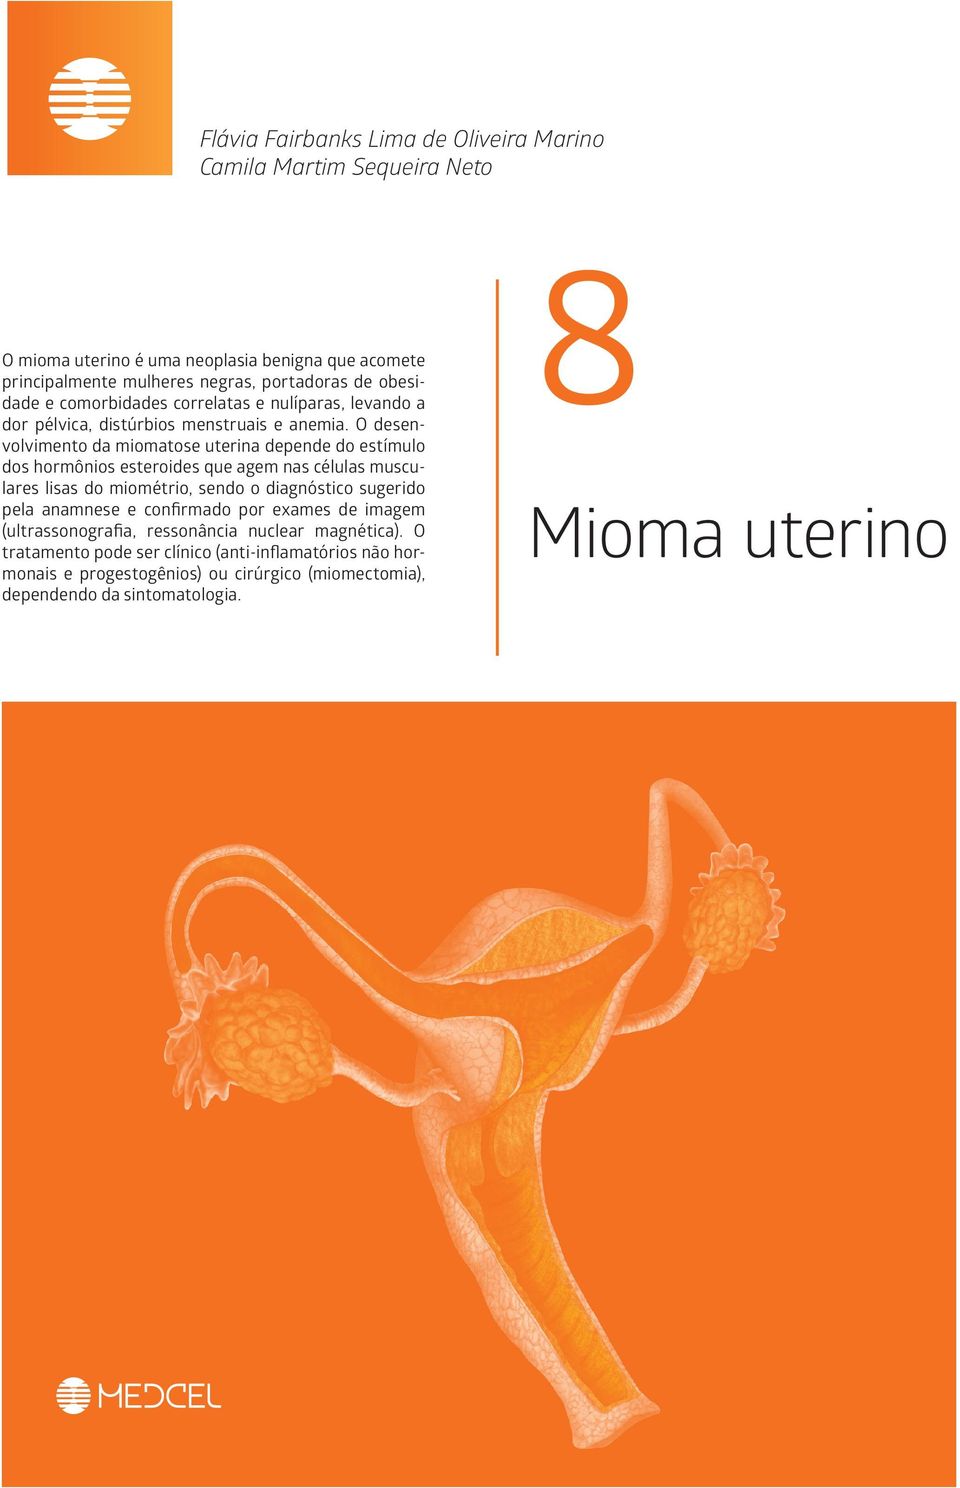 O desenvolvimento da miomatose uterina depende do estímulo dos hormônios esteroides que agem nas células musculares lisas do miométrio, sendo o diagnóstico sugerido pela